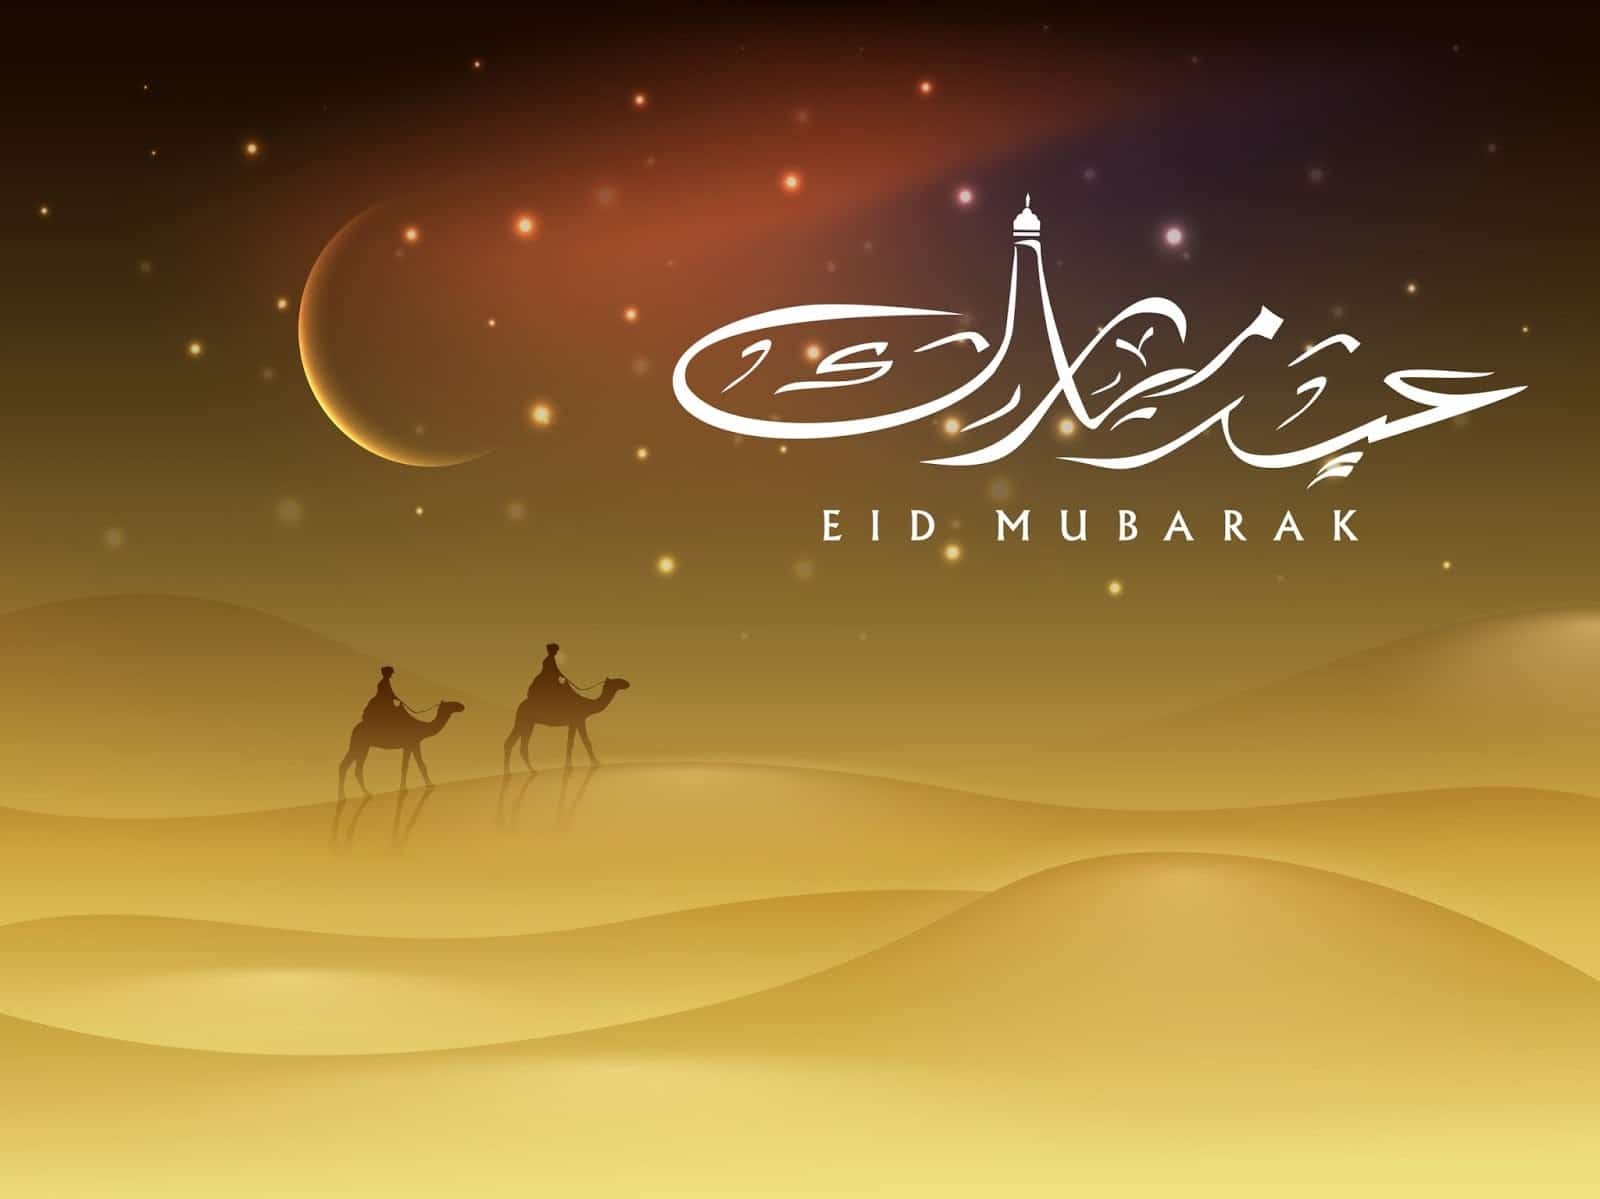 Eid Mubarak Wishes In Arabic Oppidan Library